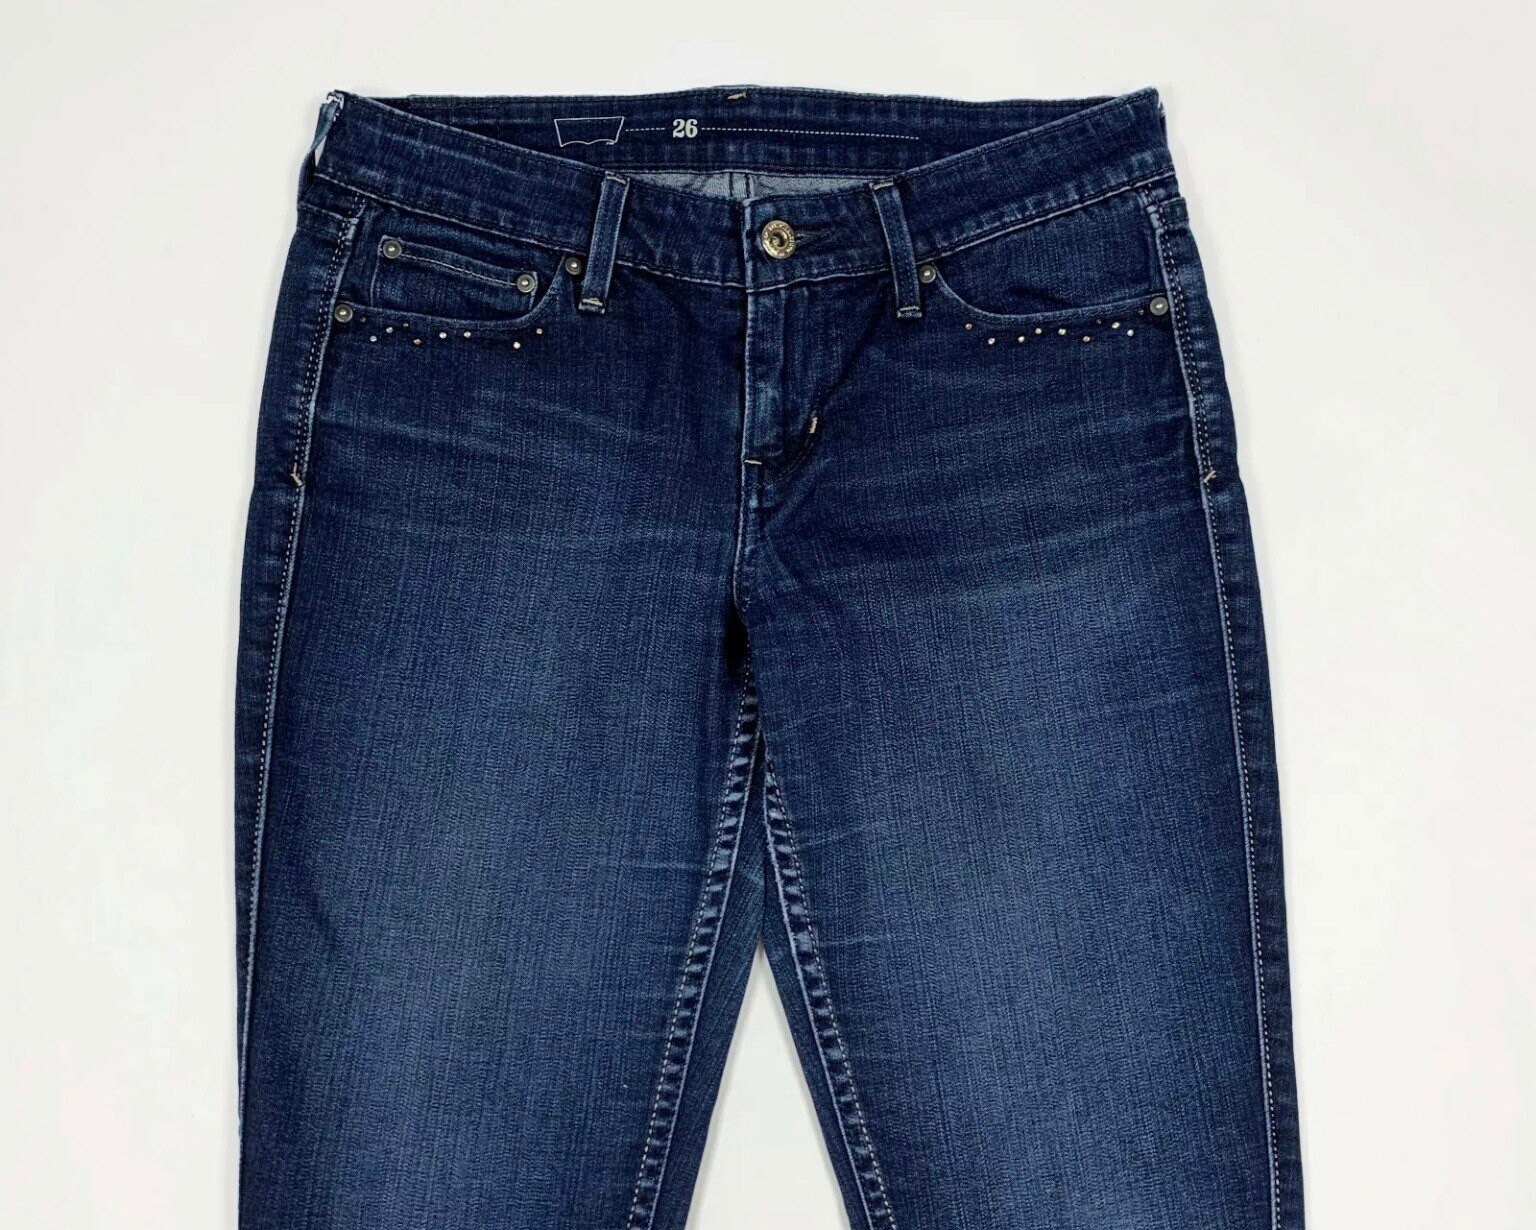 Jeans Donna con Cerniera Posteriore Pantaloni Skinny in Denim Elasticizzato con Cerniera Posteriore Pantaloni in Denim a Vita Alta con Tasche